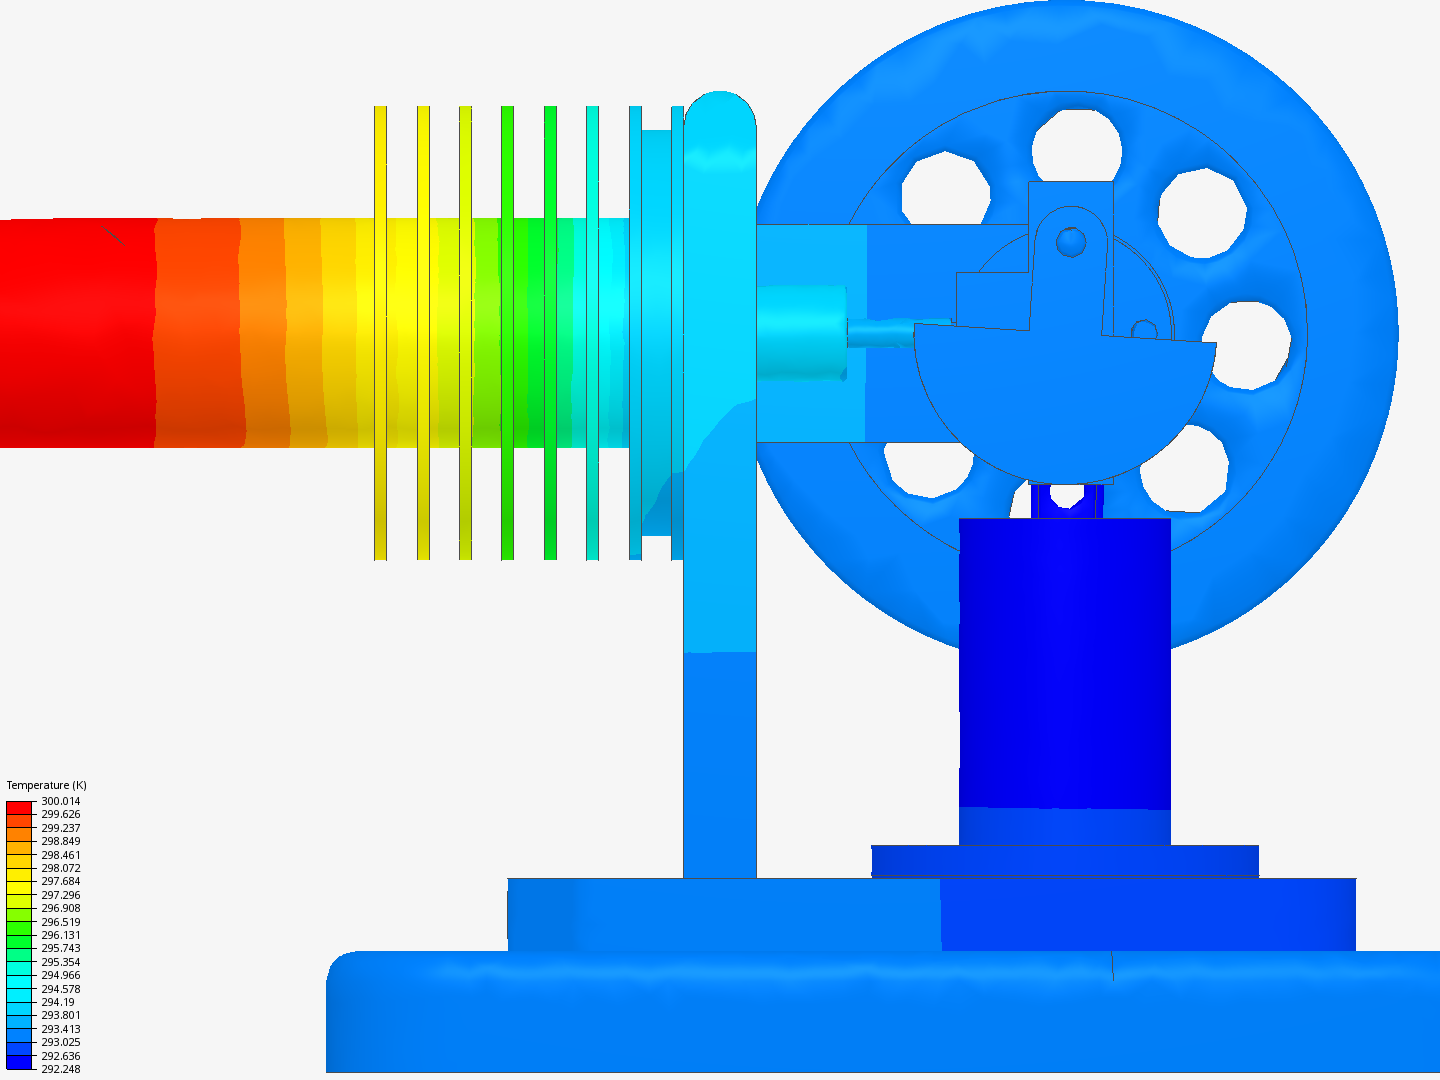 Stirling Engine image